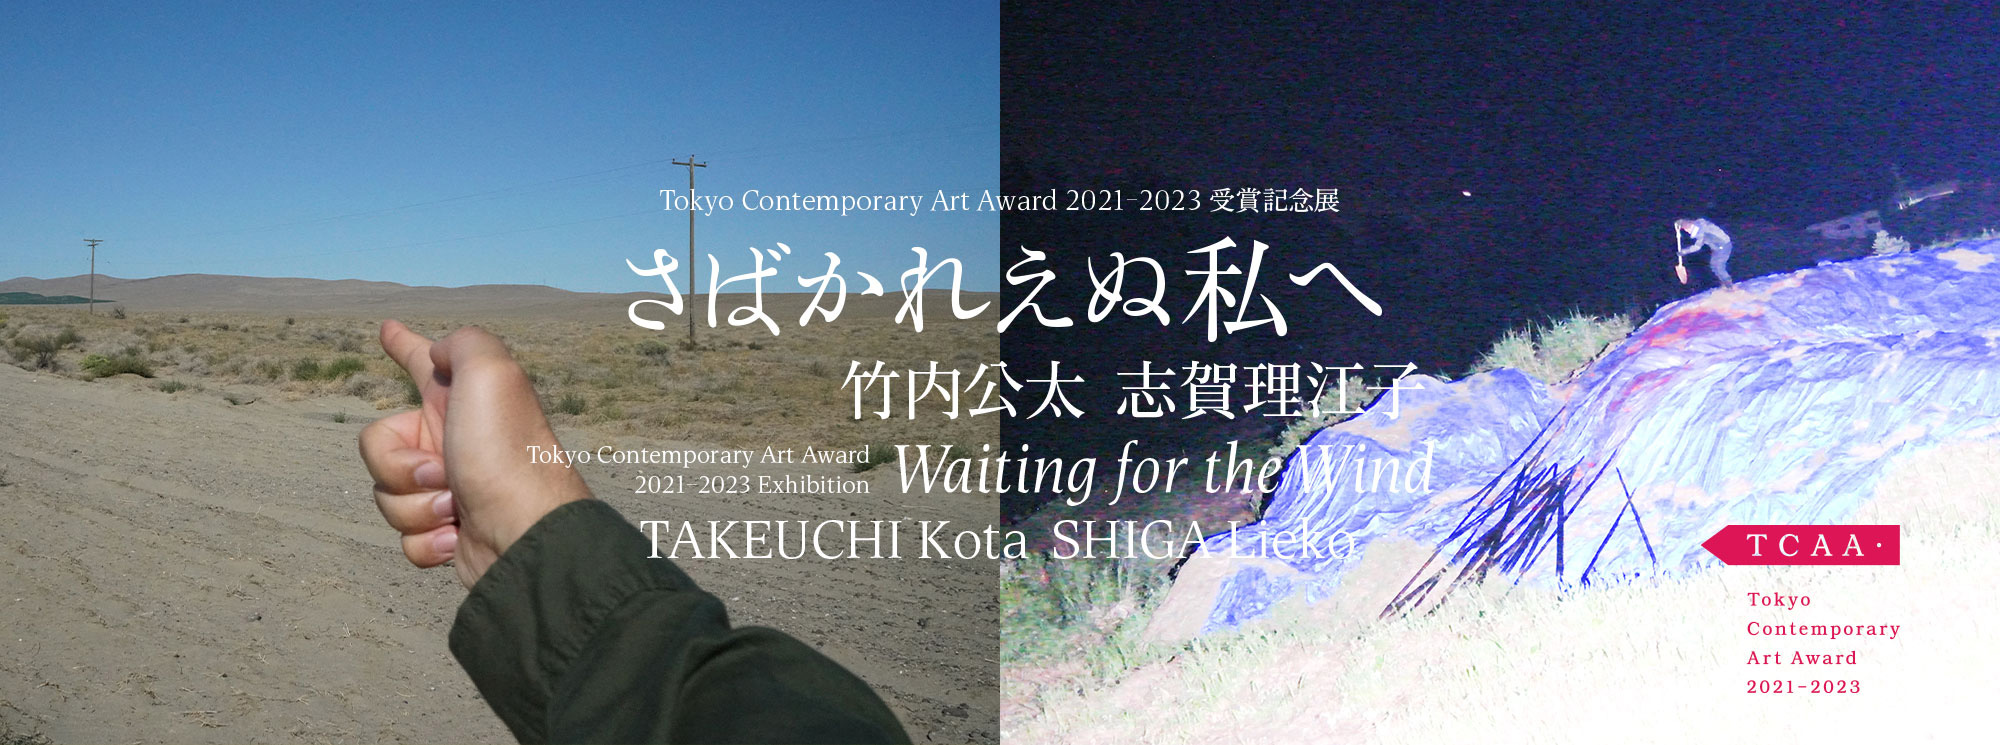 Tokyo Contemporary Art Award 2021-2023 Exhibition